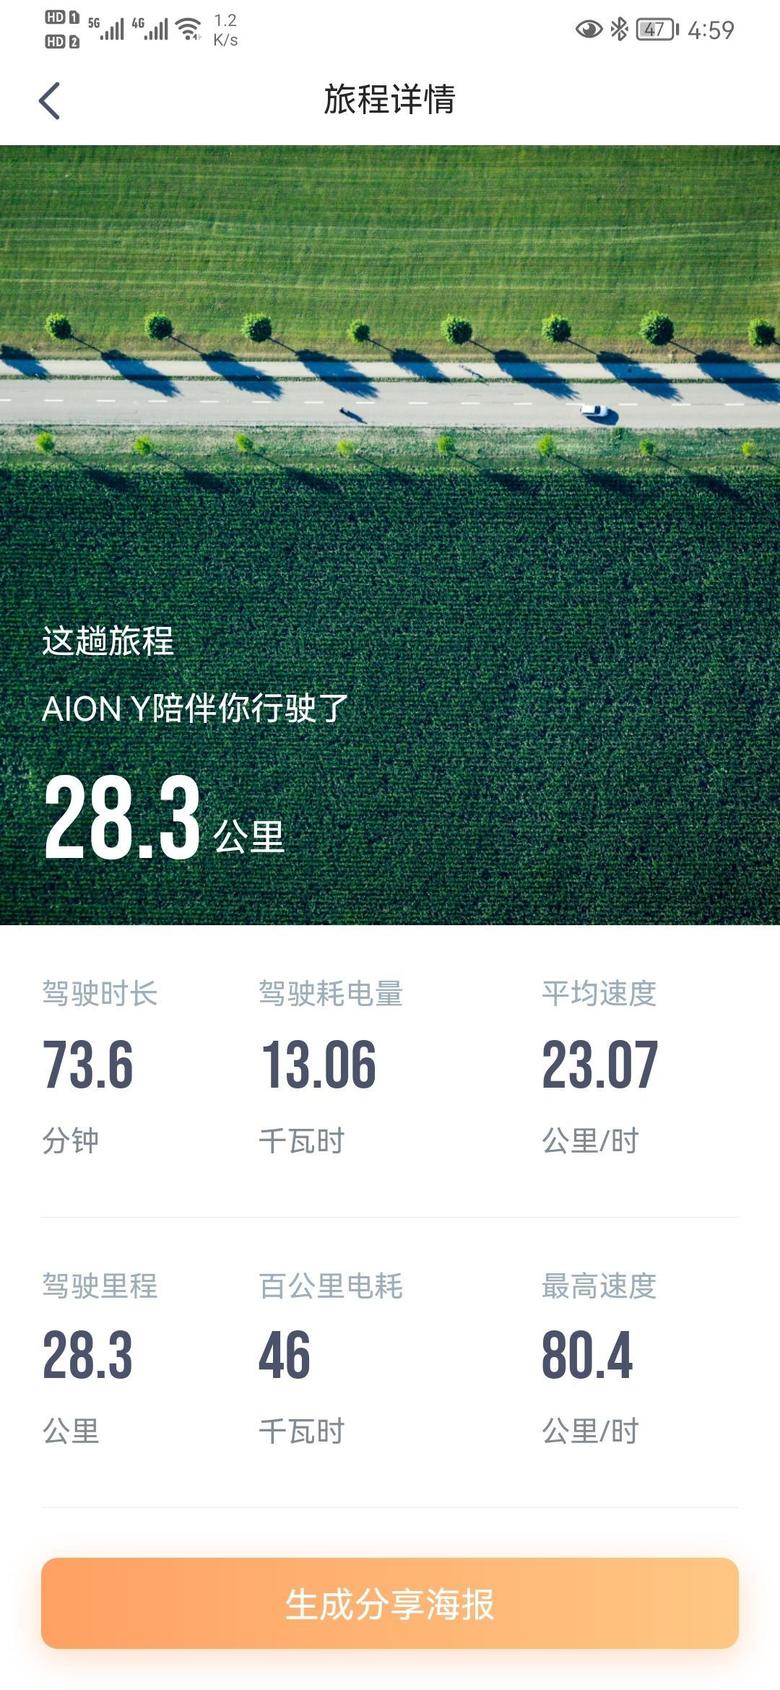 aion y北京有人跑过这么高吗，跑了28公里。出发的时候还剩113公里，停车的时候还剩5公里电量。单踏板，早晨热车了，提前开了五分钟空调24度。前百分之80百公里21个电左右。最后这百分之20太虚了吧